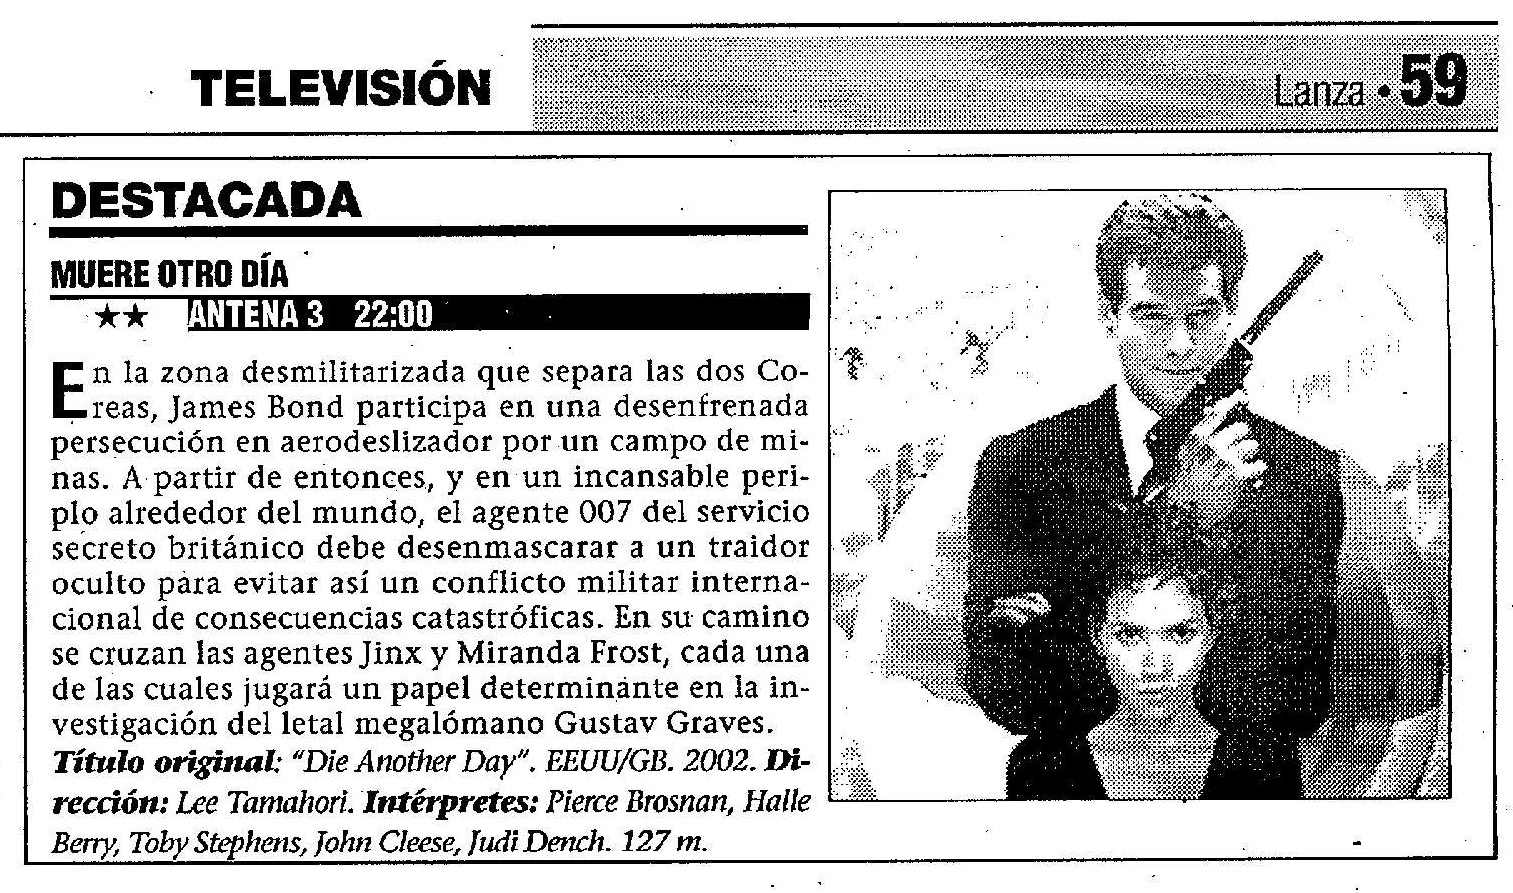 20 2006 11 29 Lanza Ciudad Real 59 Antena3